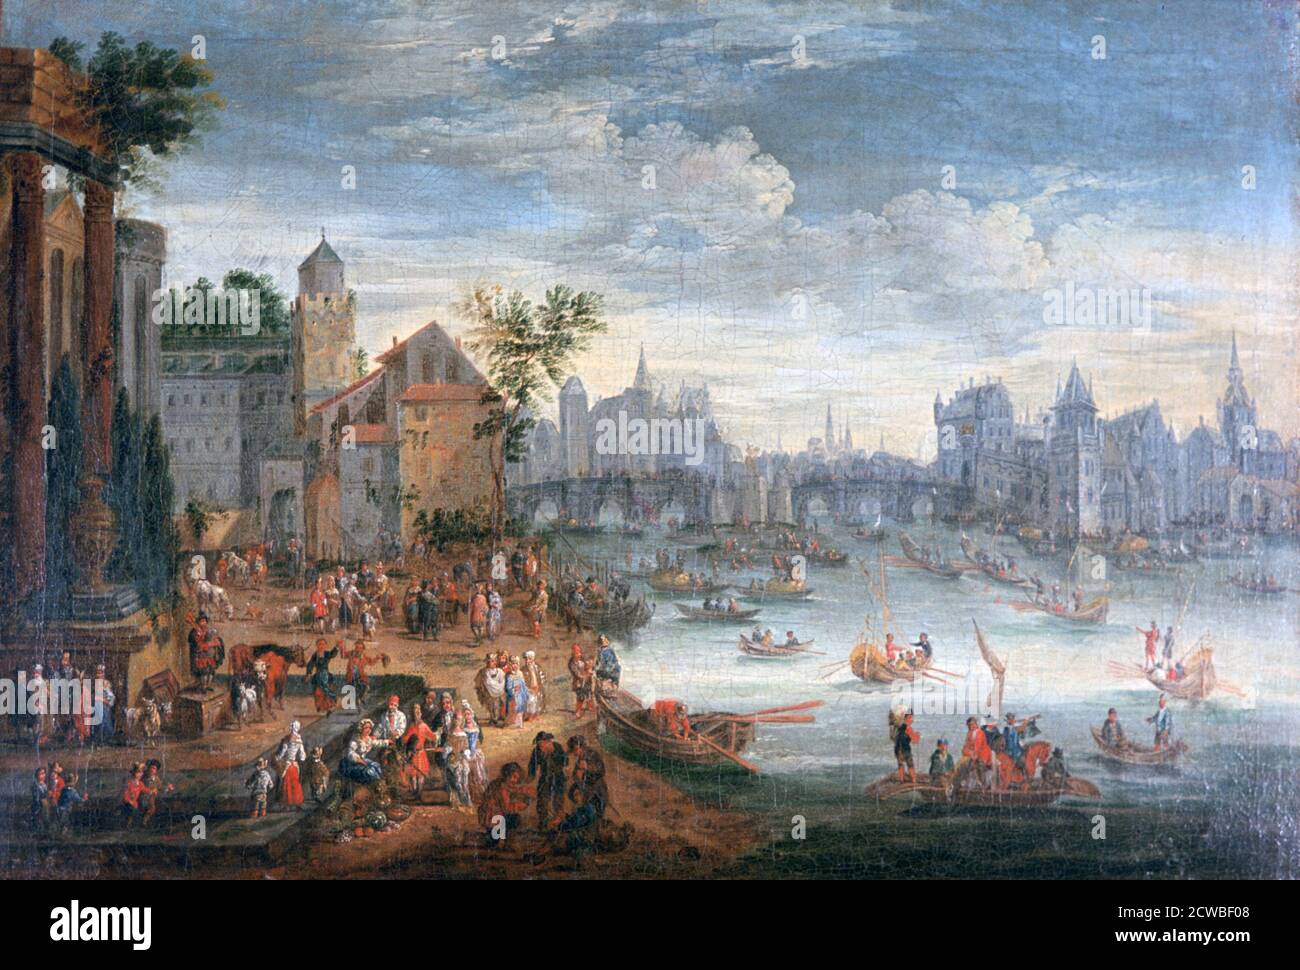 Die seine, Paris', 17. Jahrhundert. Künstler: Mathieu Schoewaerdts. Mathieu Schoewaerdts (c1665-1702) war ein flämischer Maler, Zeichner und Grafiker. Bekannt ist er vor allem für seine Landschaften mit Bäumen, Marinen und Genreszenen. Stockfoto